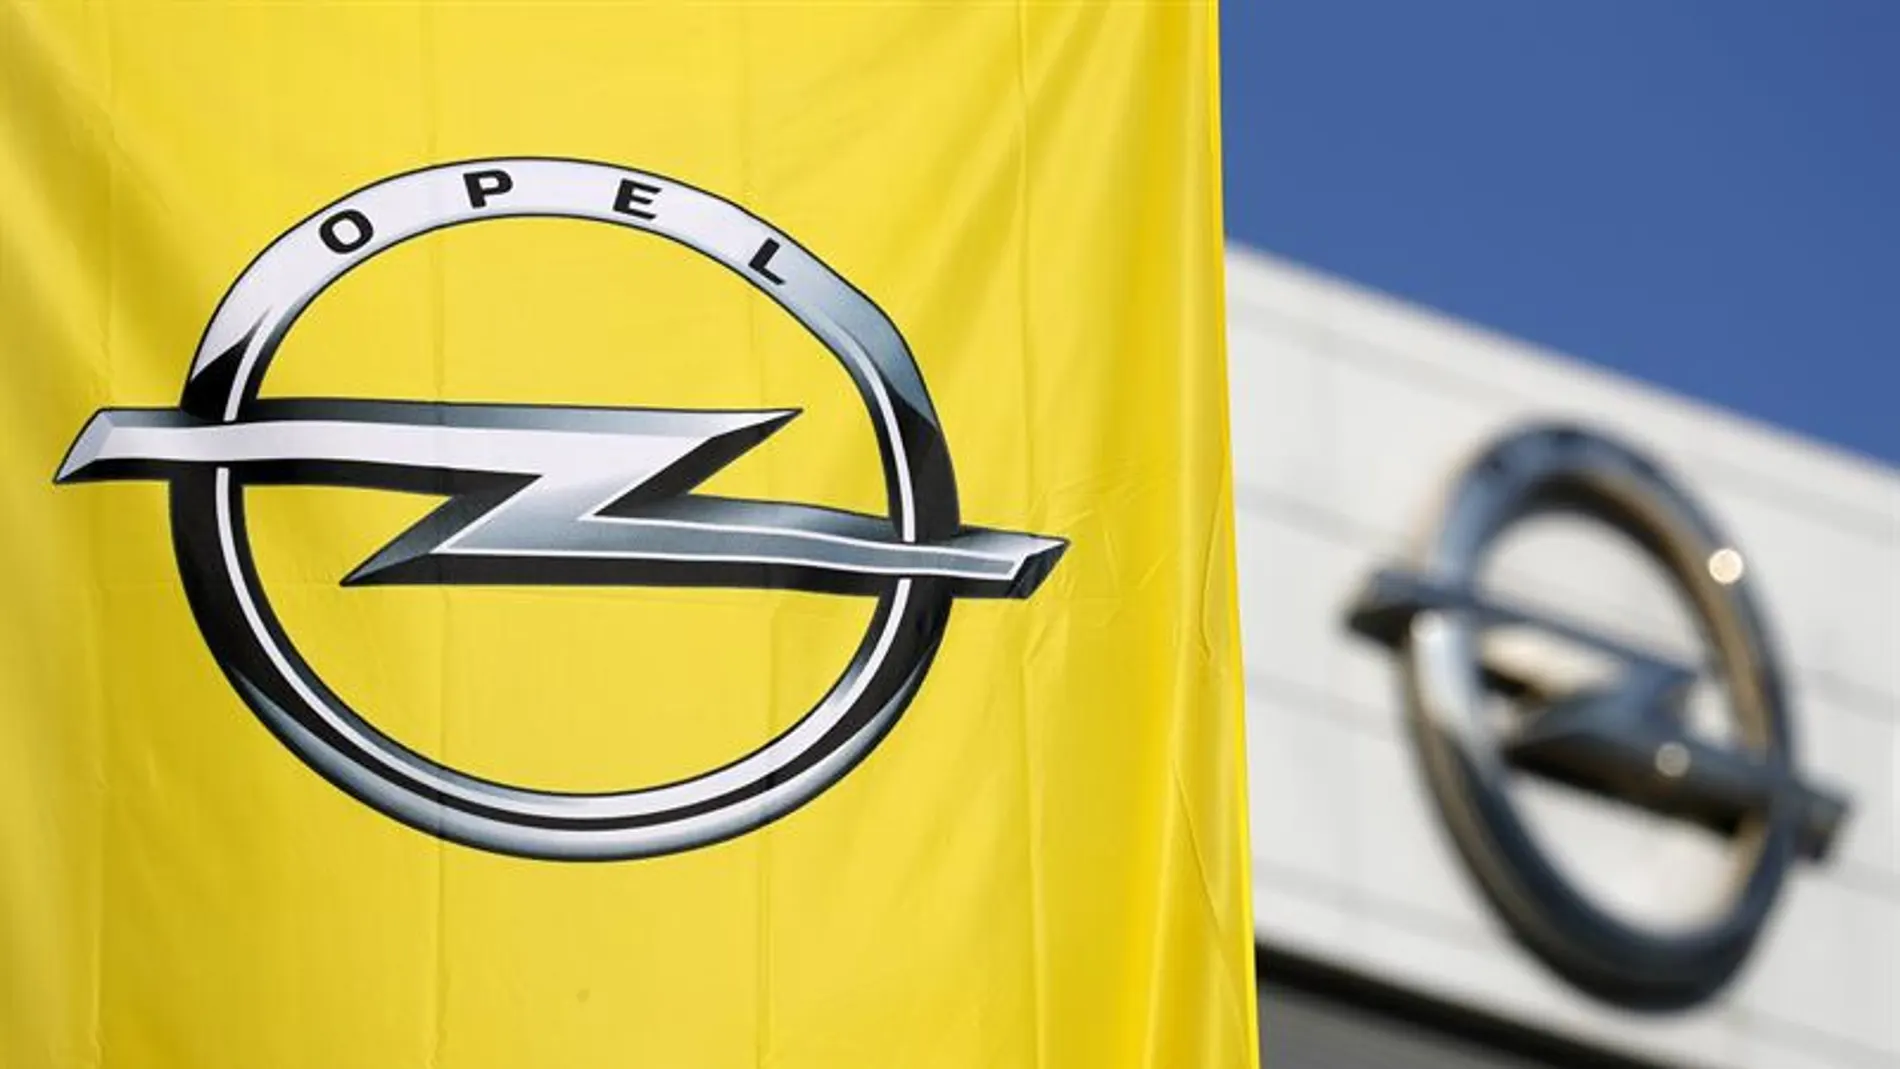 Logo de Opel